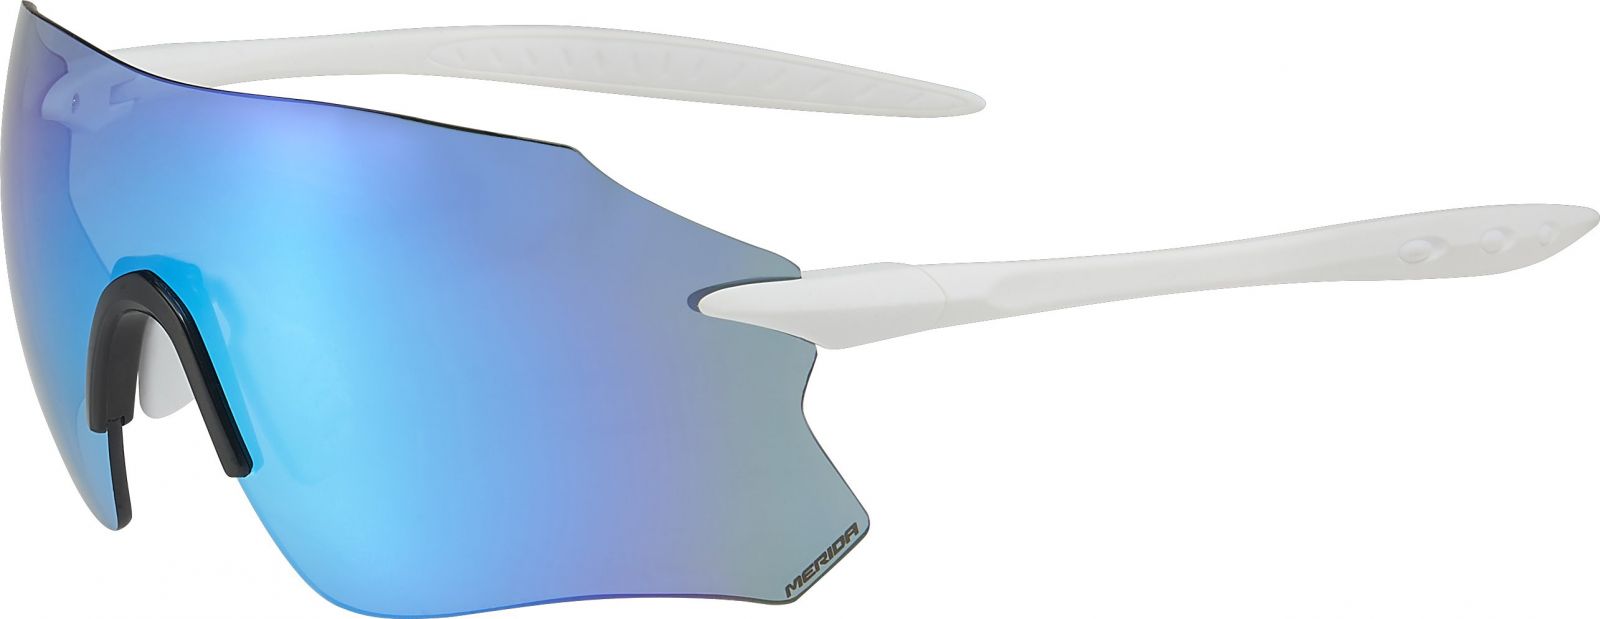 MERIDA - Brýle FRAMELLES 3 bílá/modrá